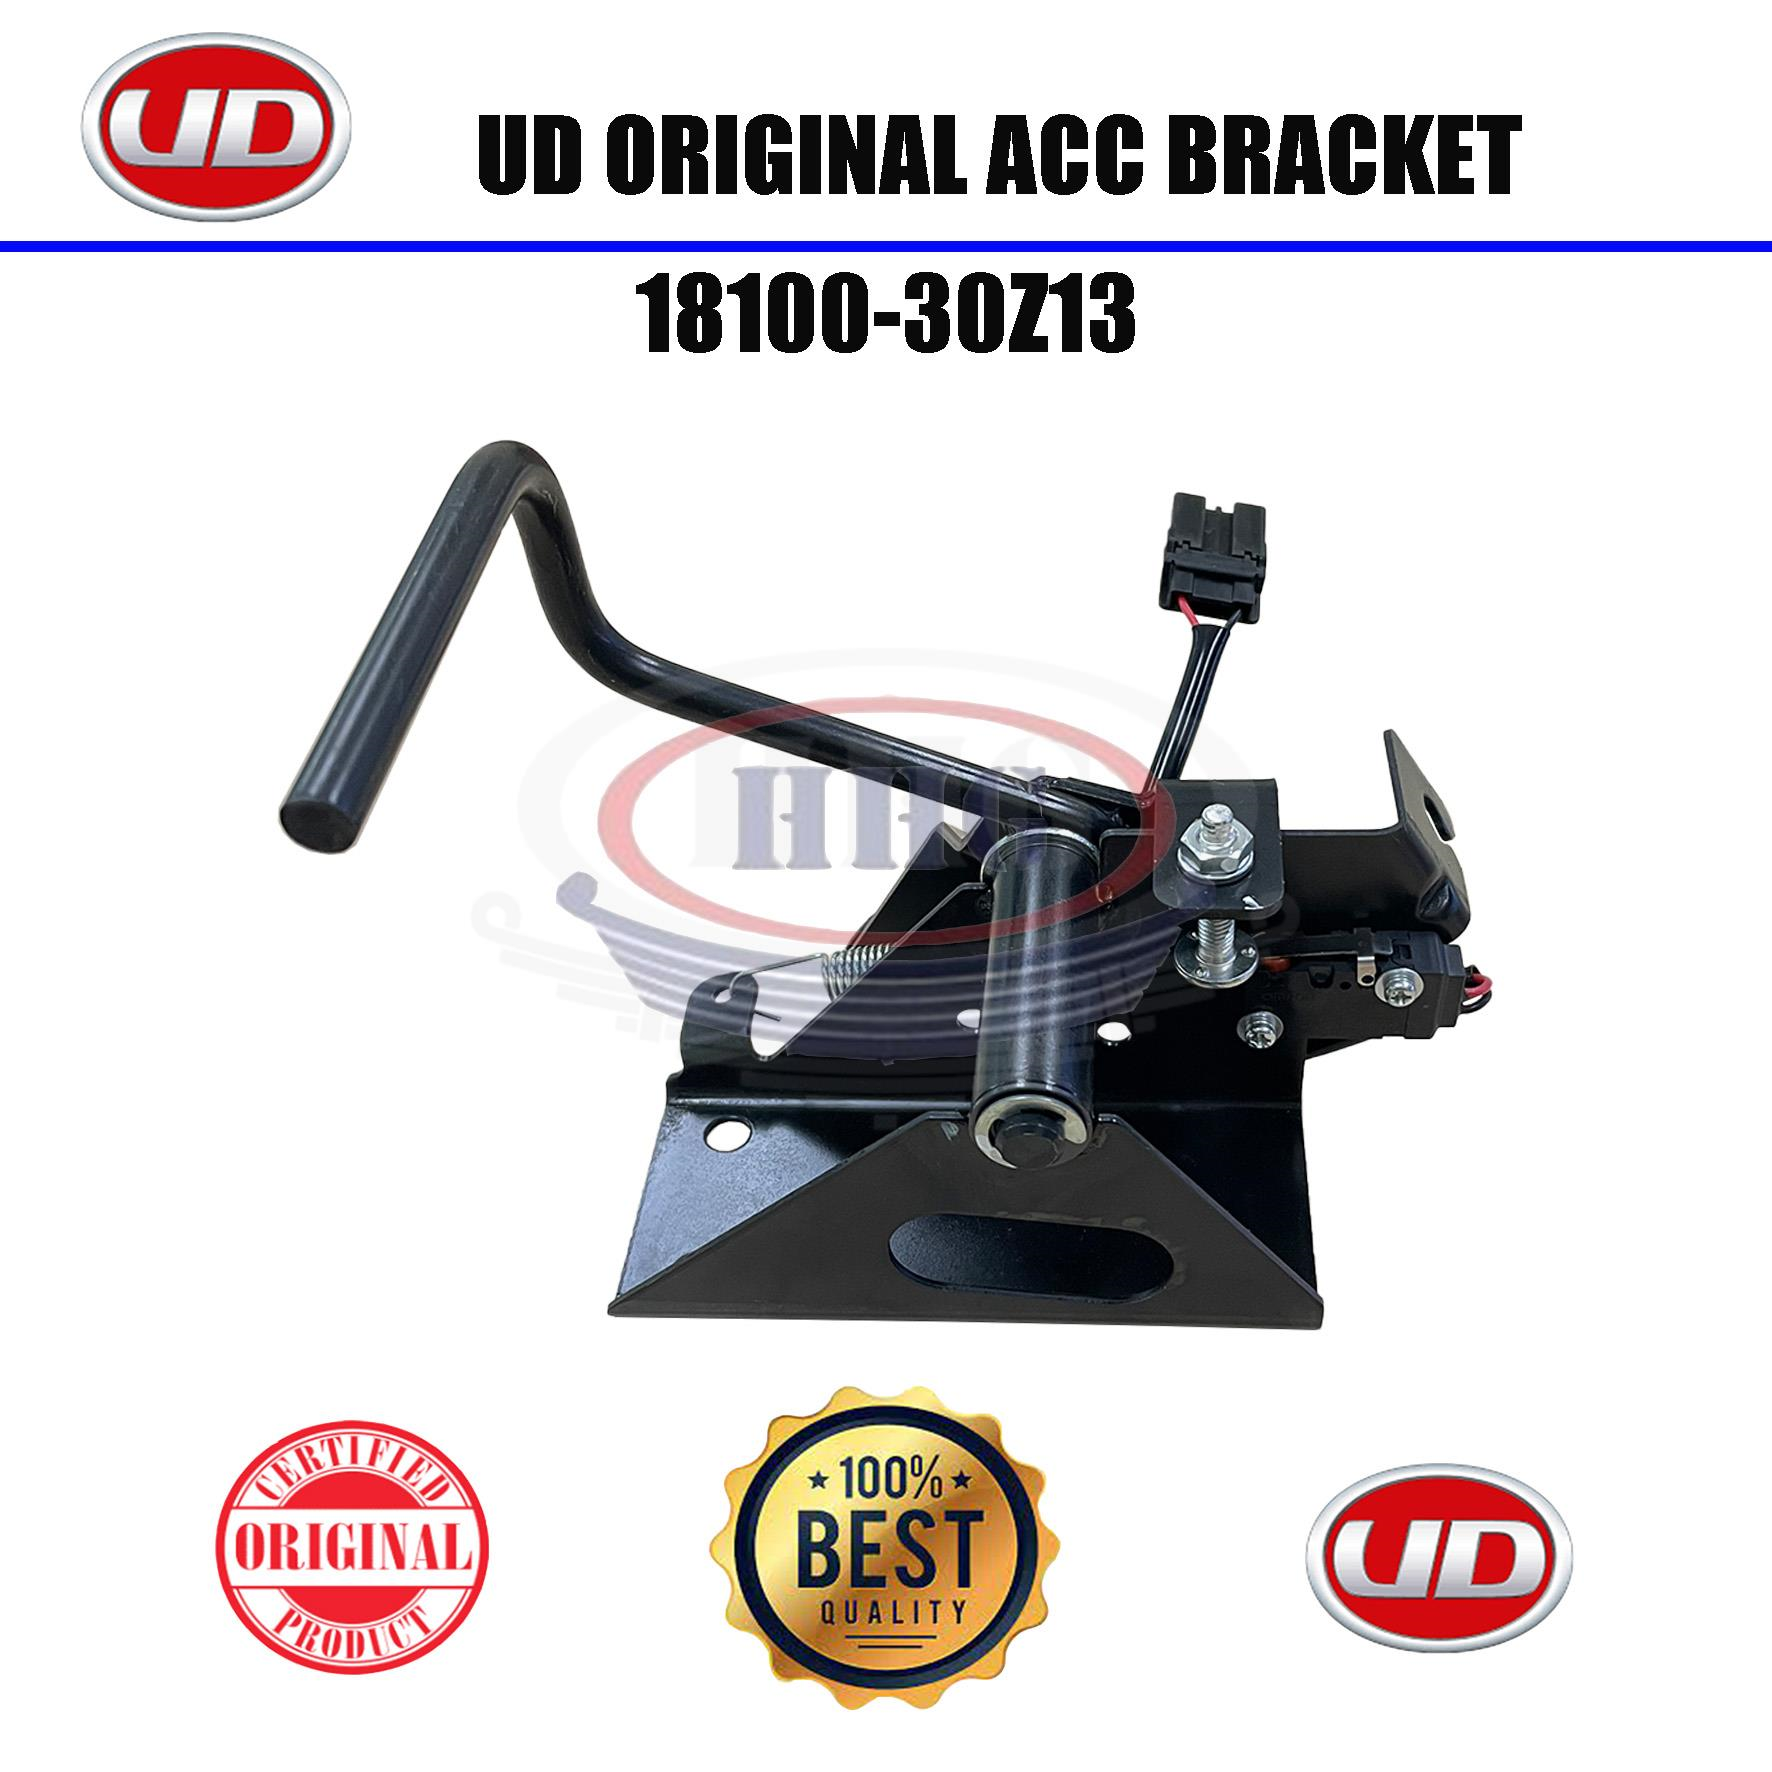 UD Original PKD211 Acc Bracket (18100-30Z13)